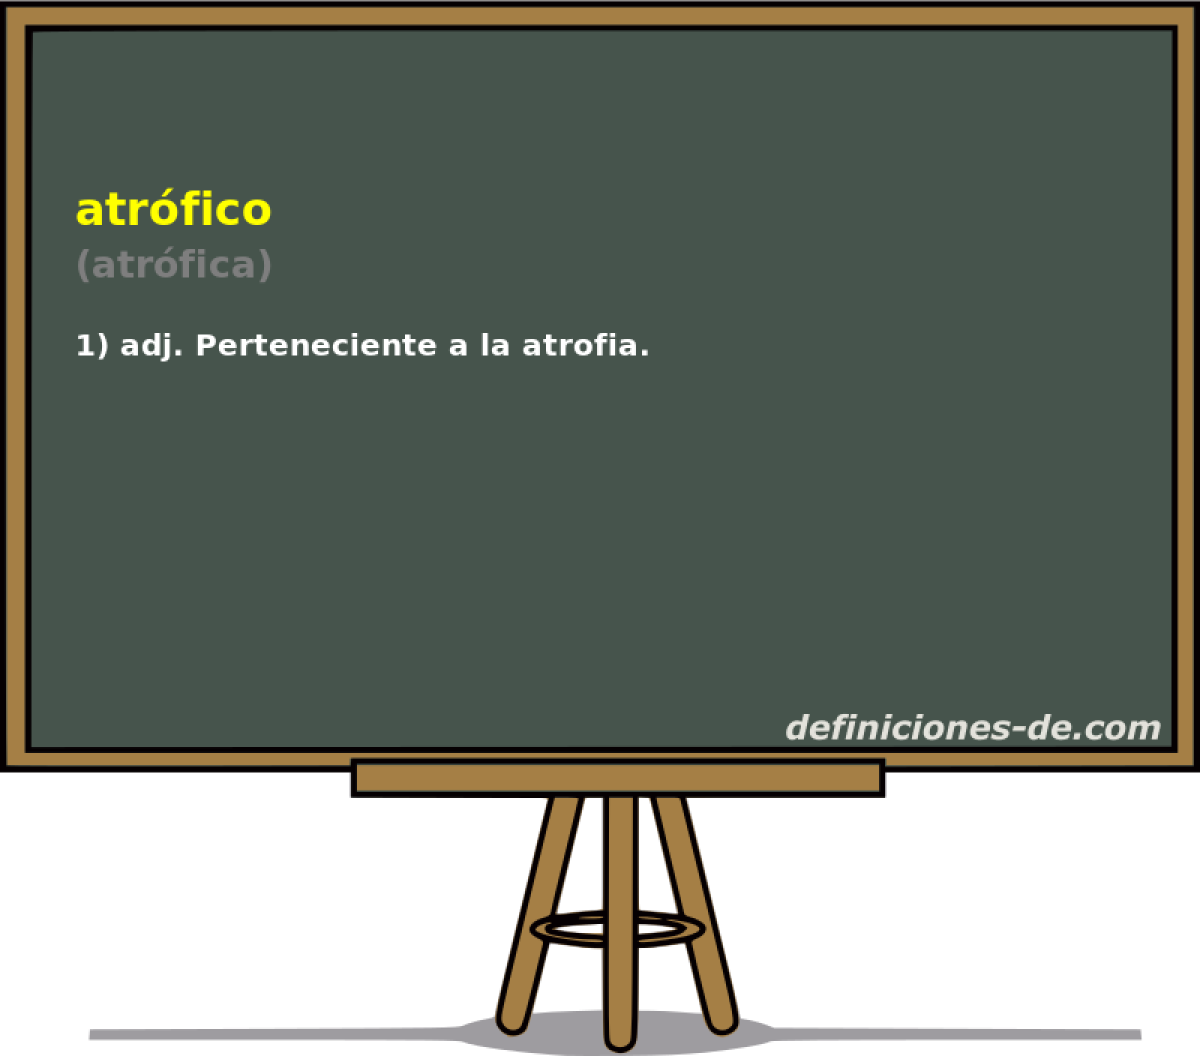 atrfico (atrfica)